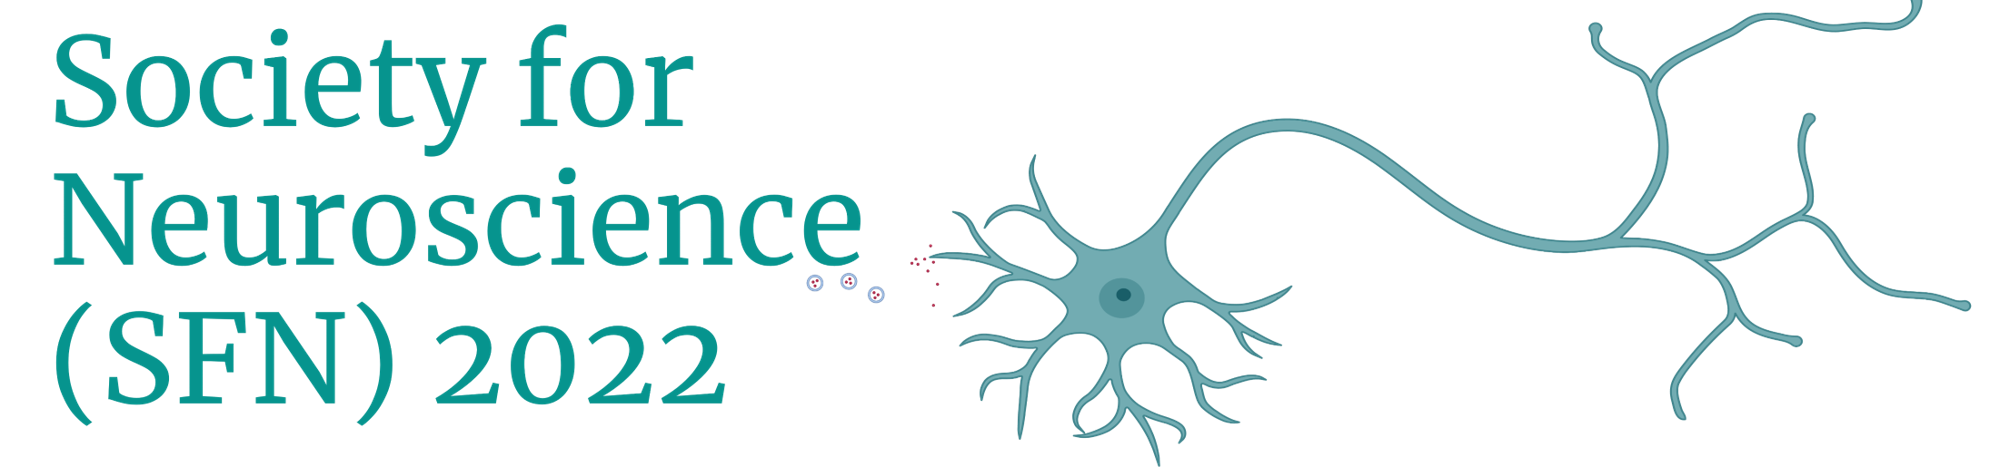 2022 Society for Neuroscience meeting OriGene